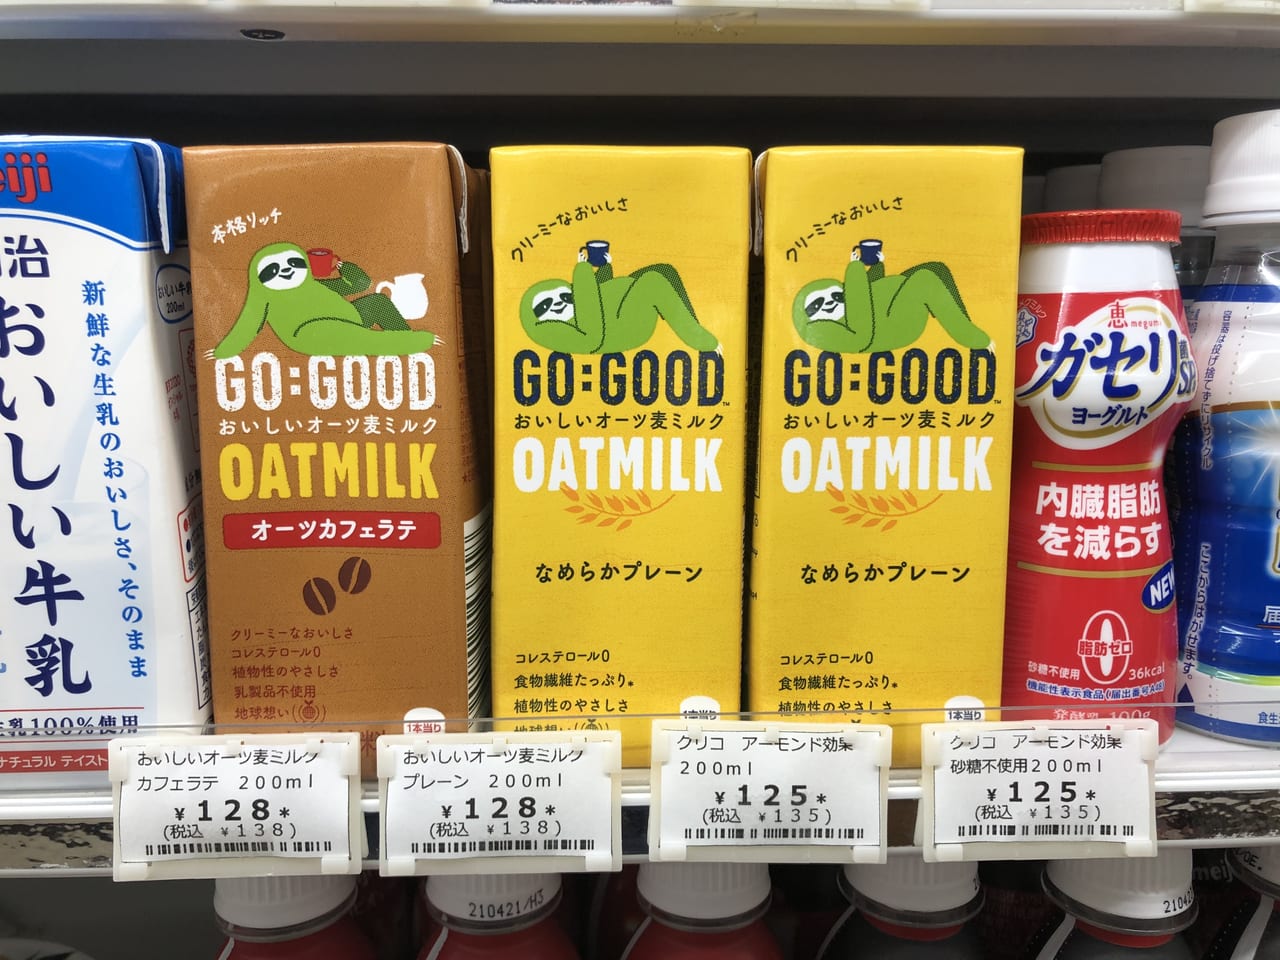 日本コカ・コーラがオーツミルクを販売開始！その売り方に注目 | Food 